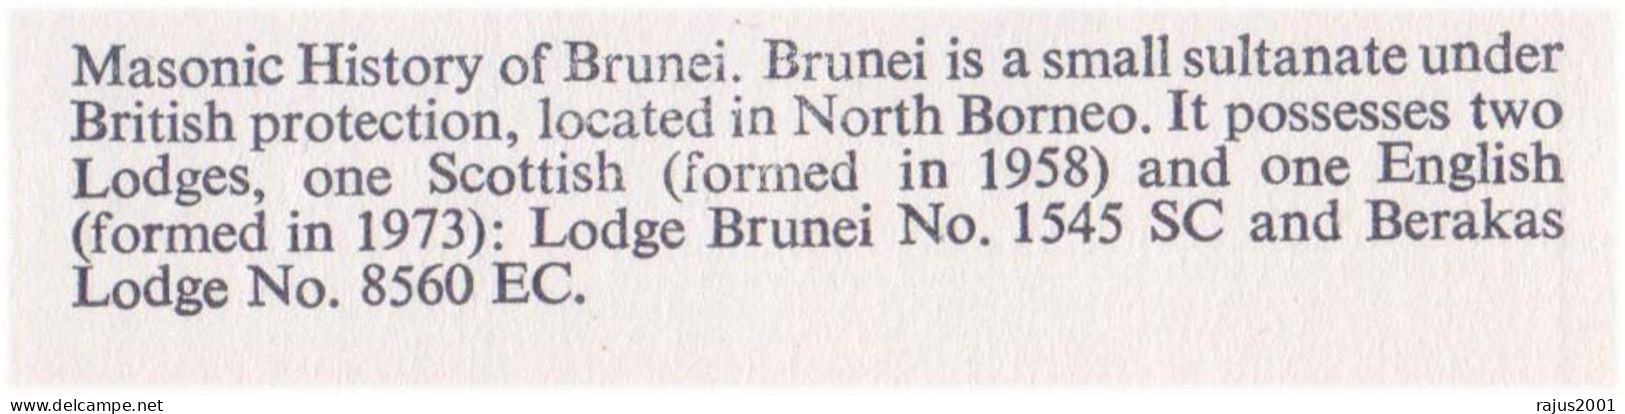 Masonic History Of Brunei, Lodge Brunei No 1545, Berakas Lodge No 8560, Bats, Bat, Animal, Freemasonry, Masonic Cover - Freimaurerei